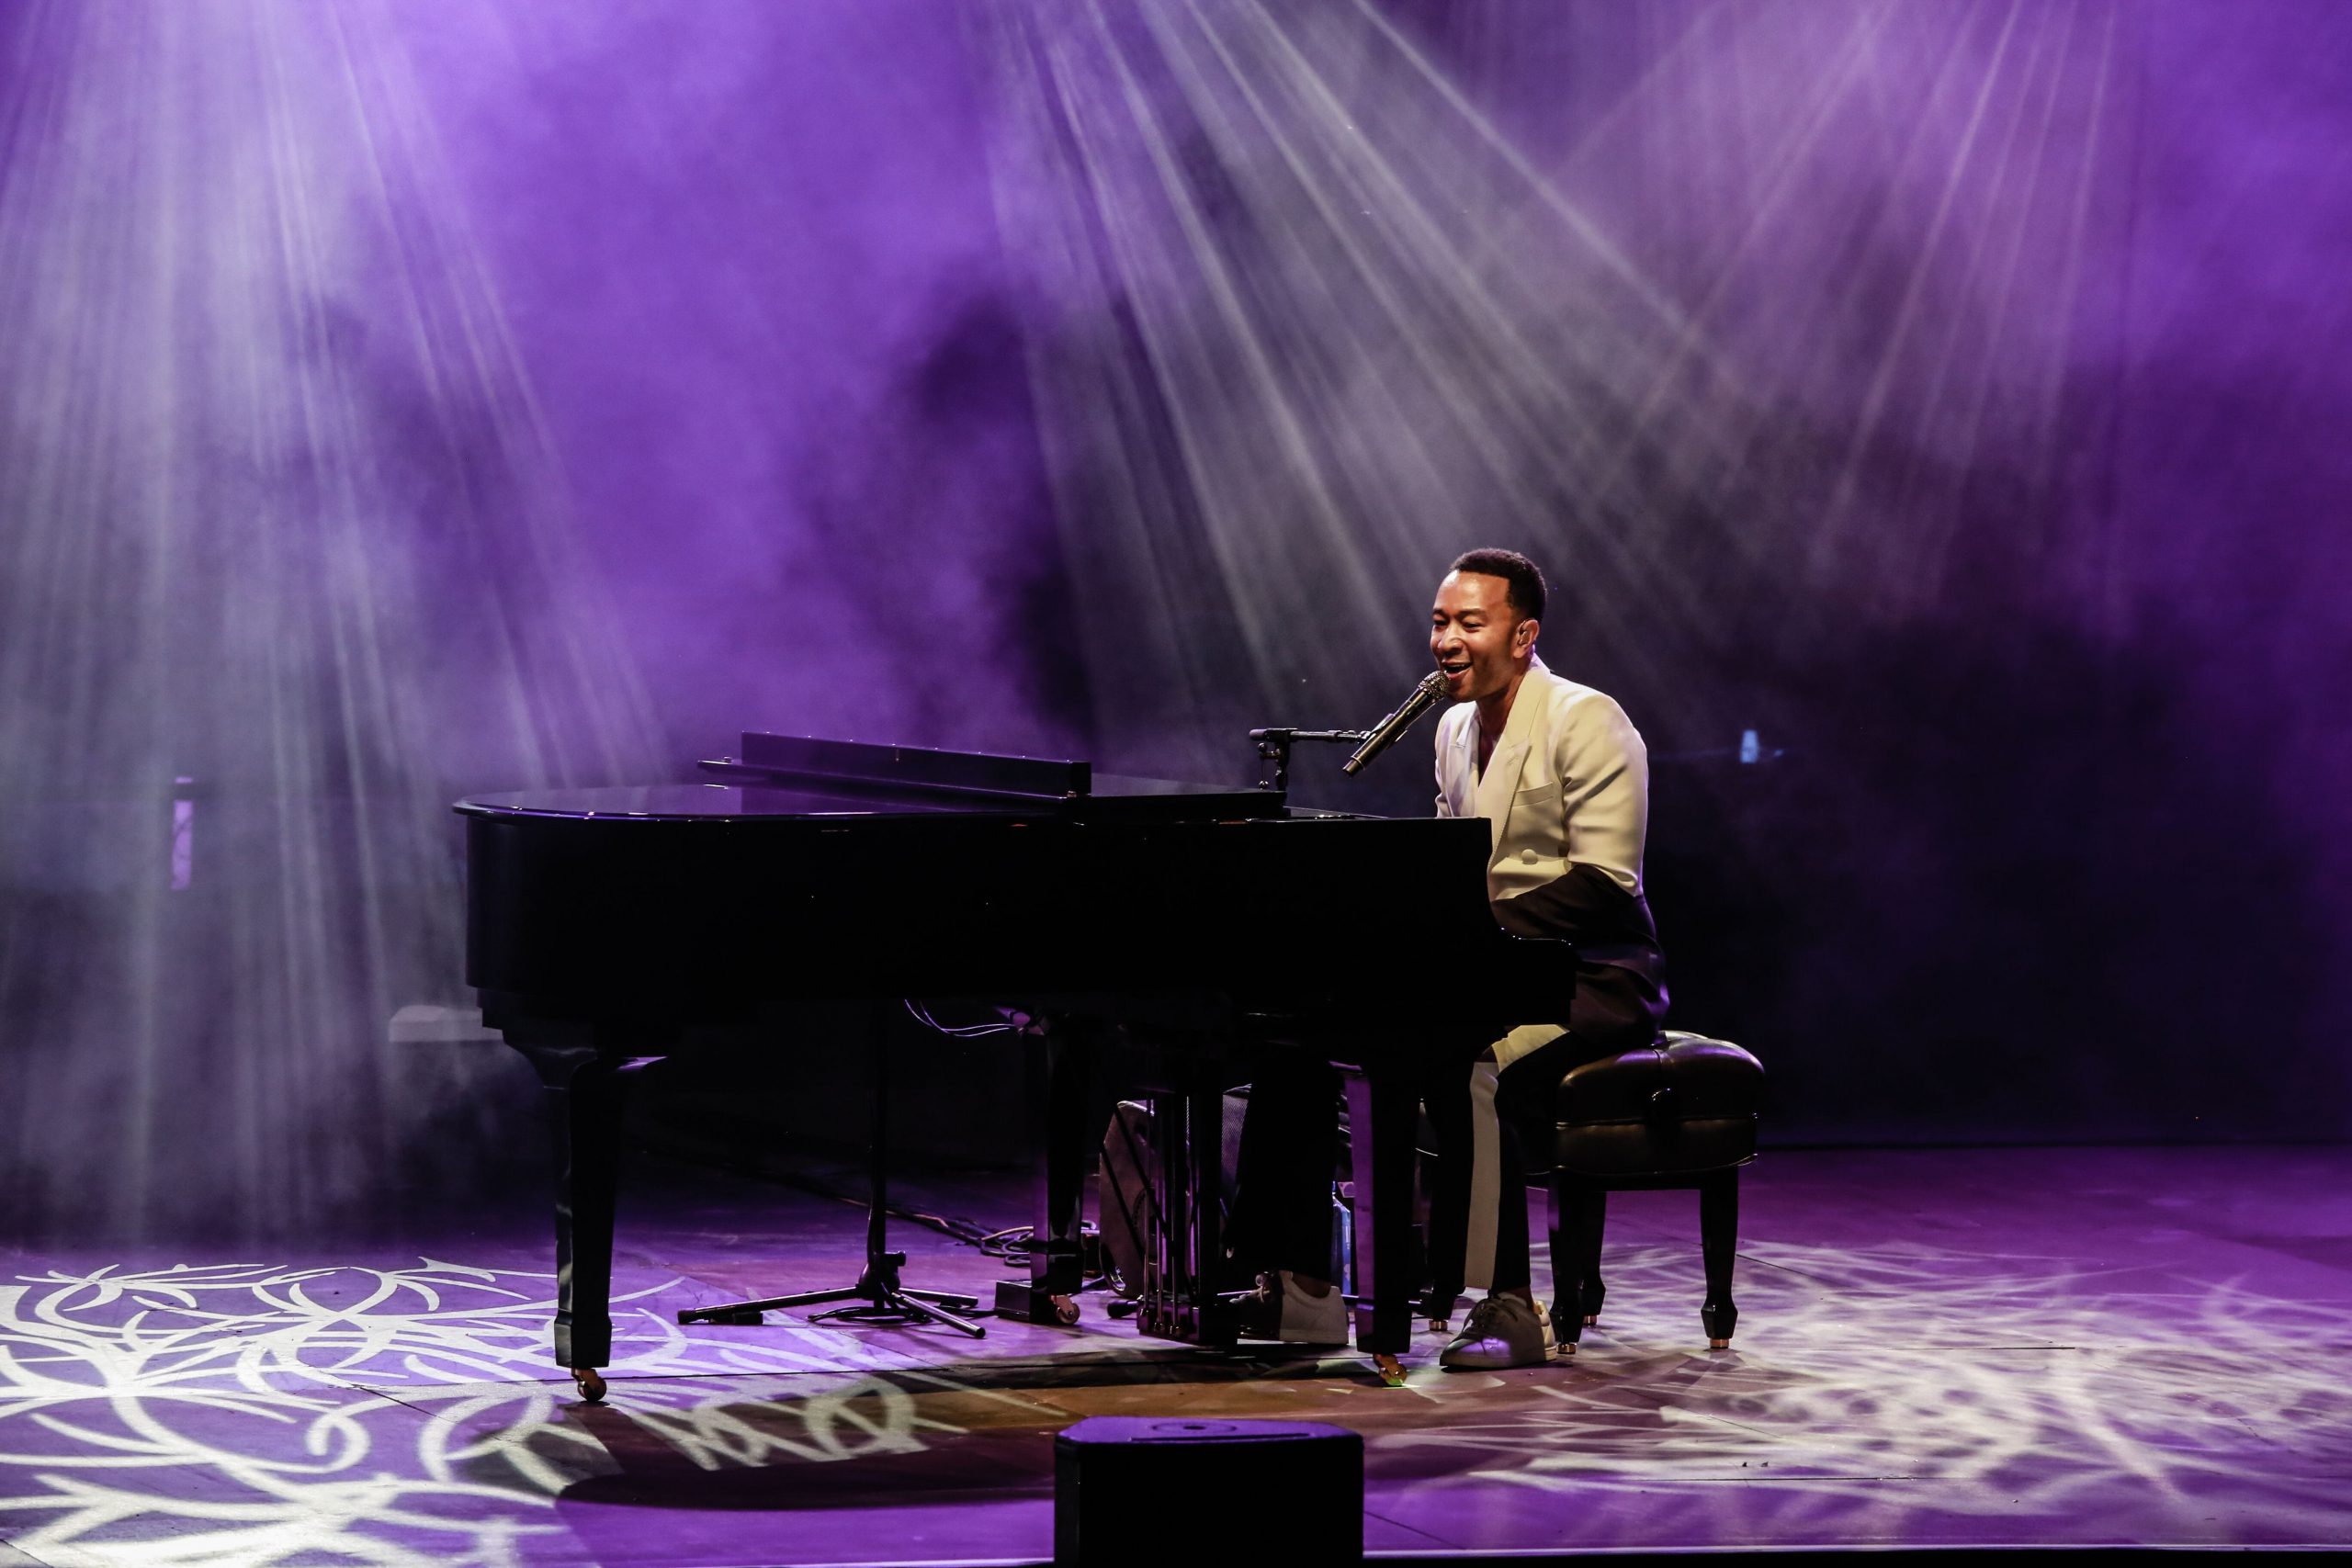 Un maravilloso John Legend triunfa al piano en Starlite